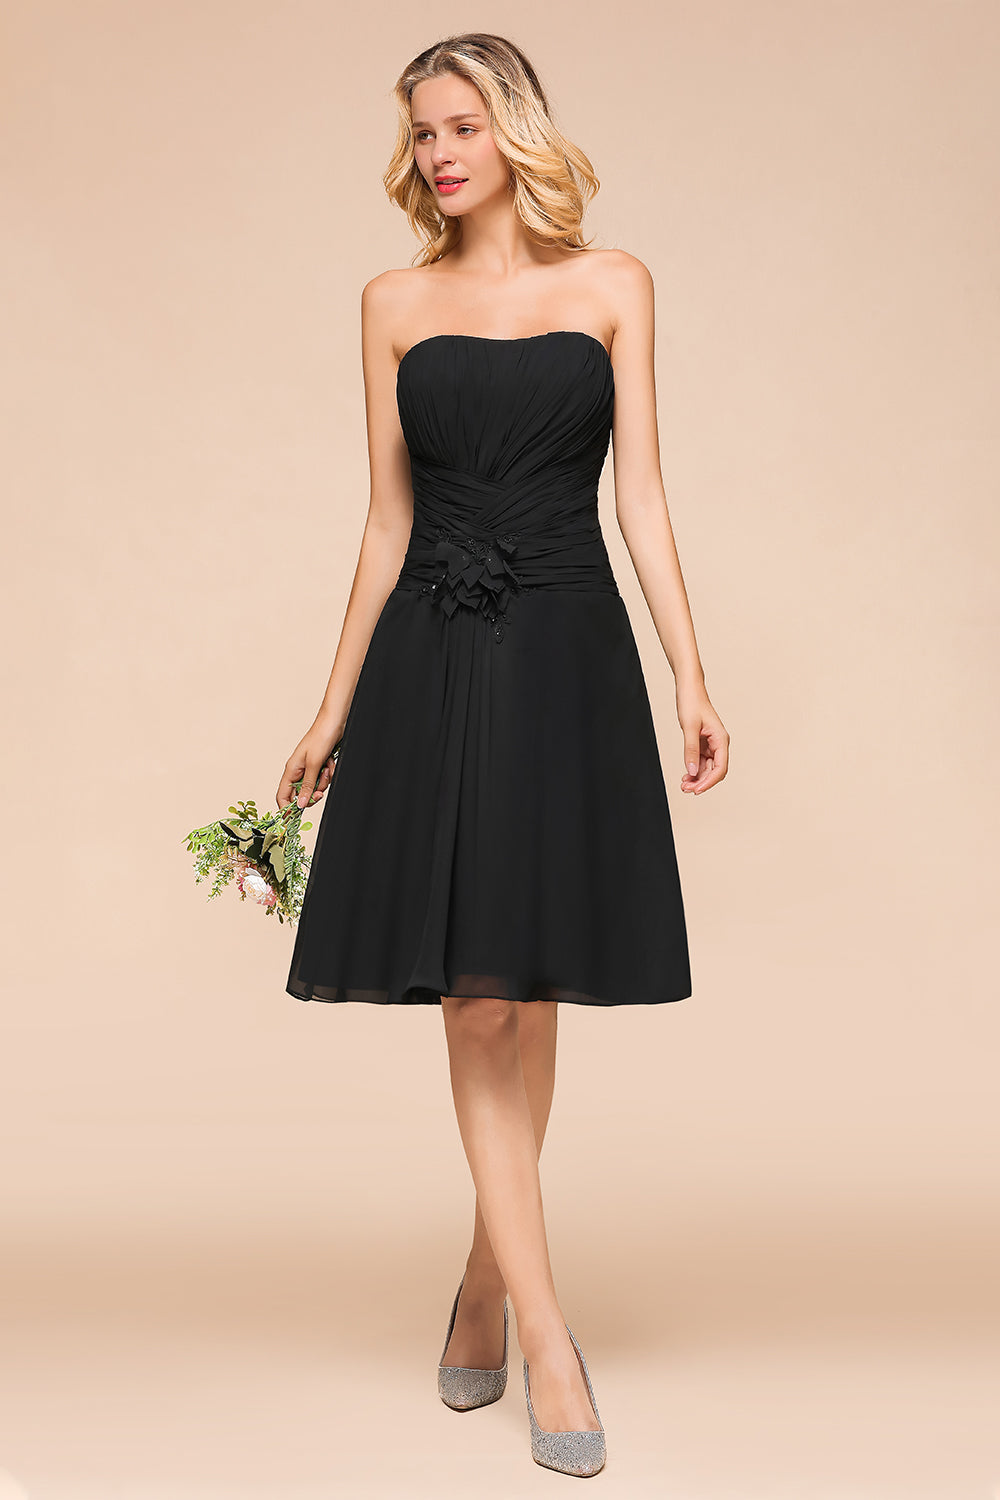 Sweetheart Ruffle Short Black Bridesmaid Dress